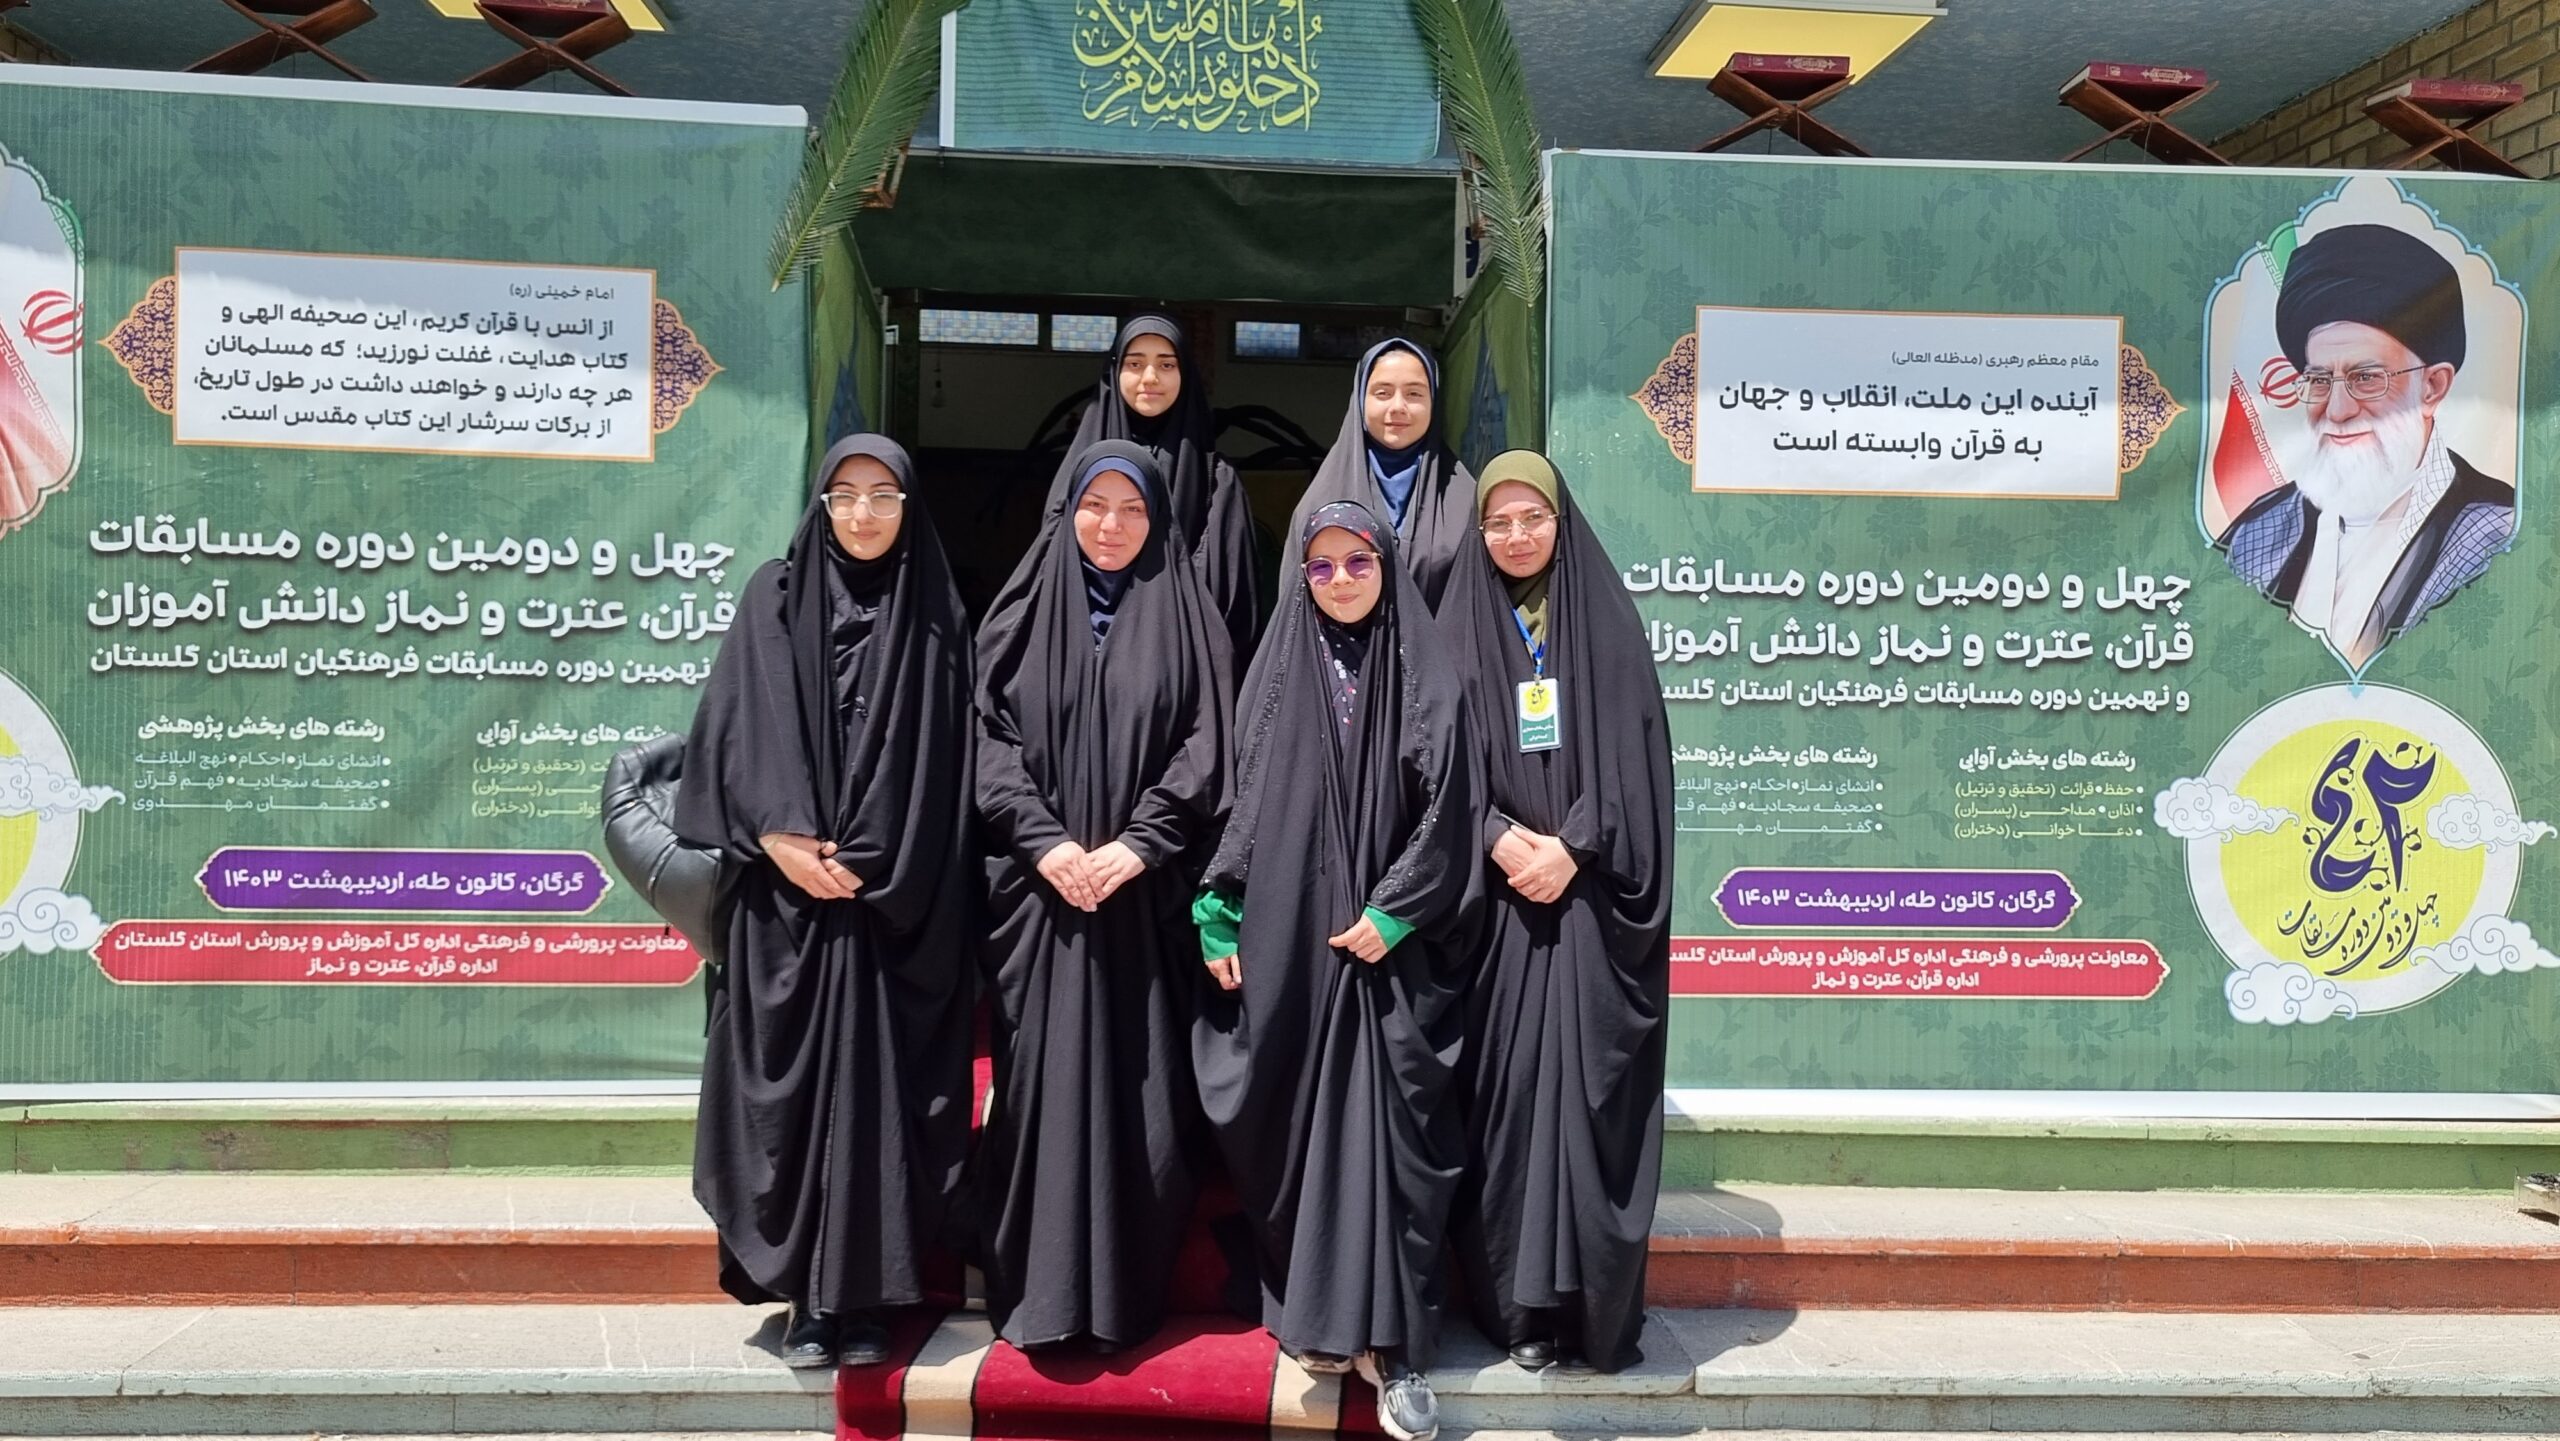 حضور دانش آموزان دختر منتخب کردکوی در مرحله استانی چهل و دومین دوره مسابقات قرآن دانش آموزی